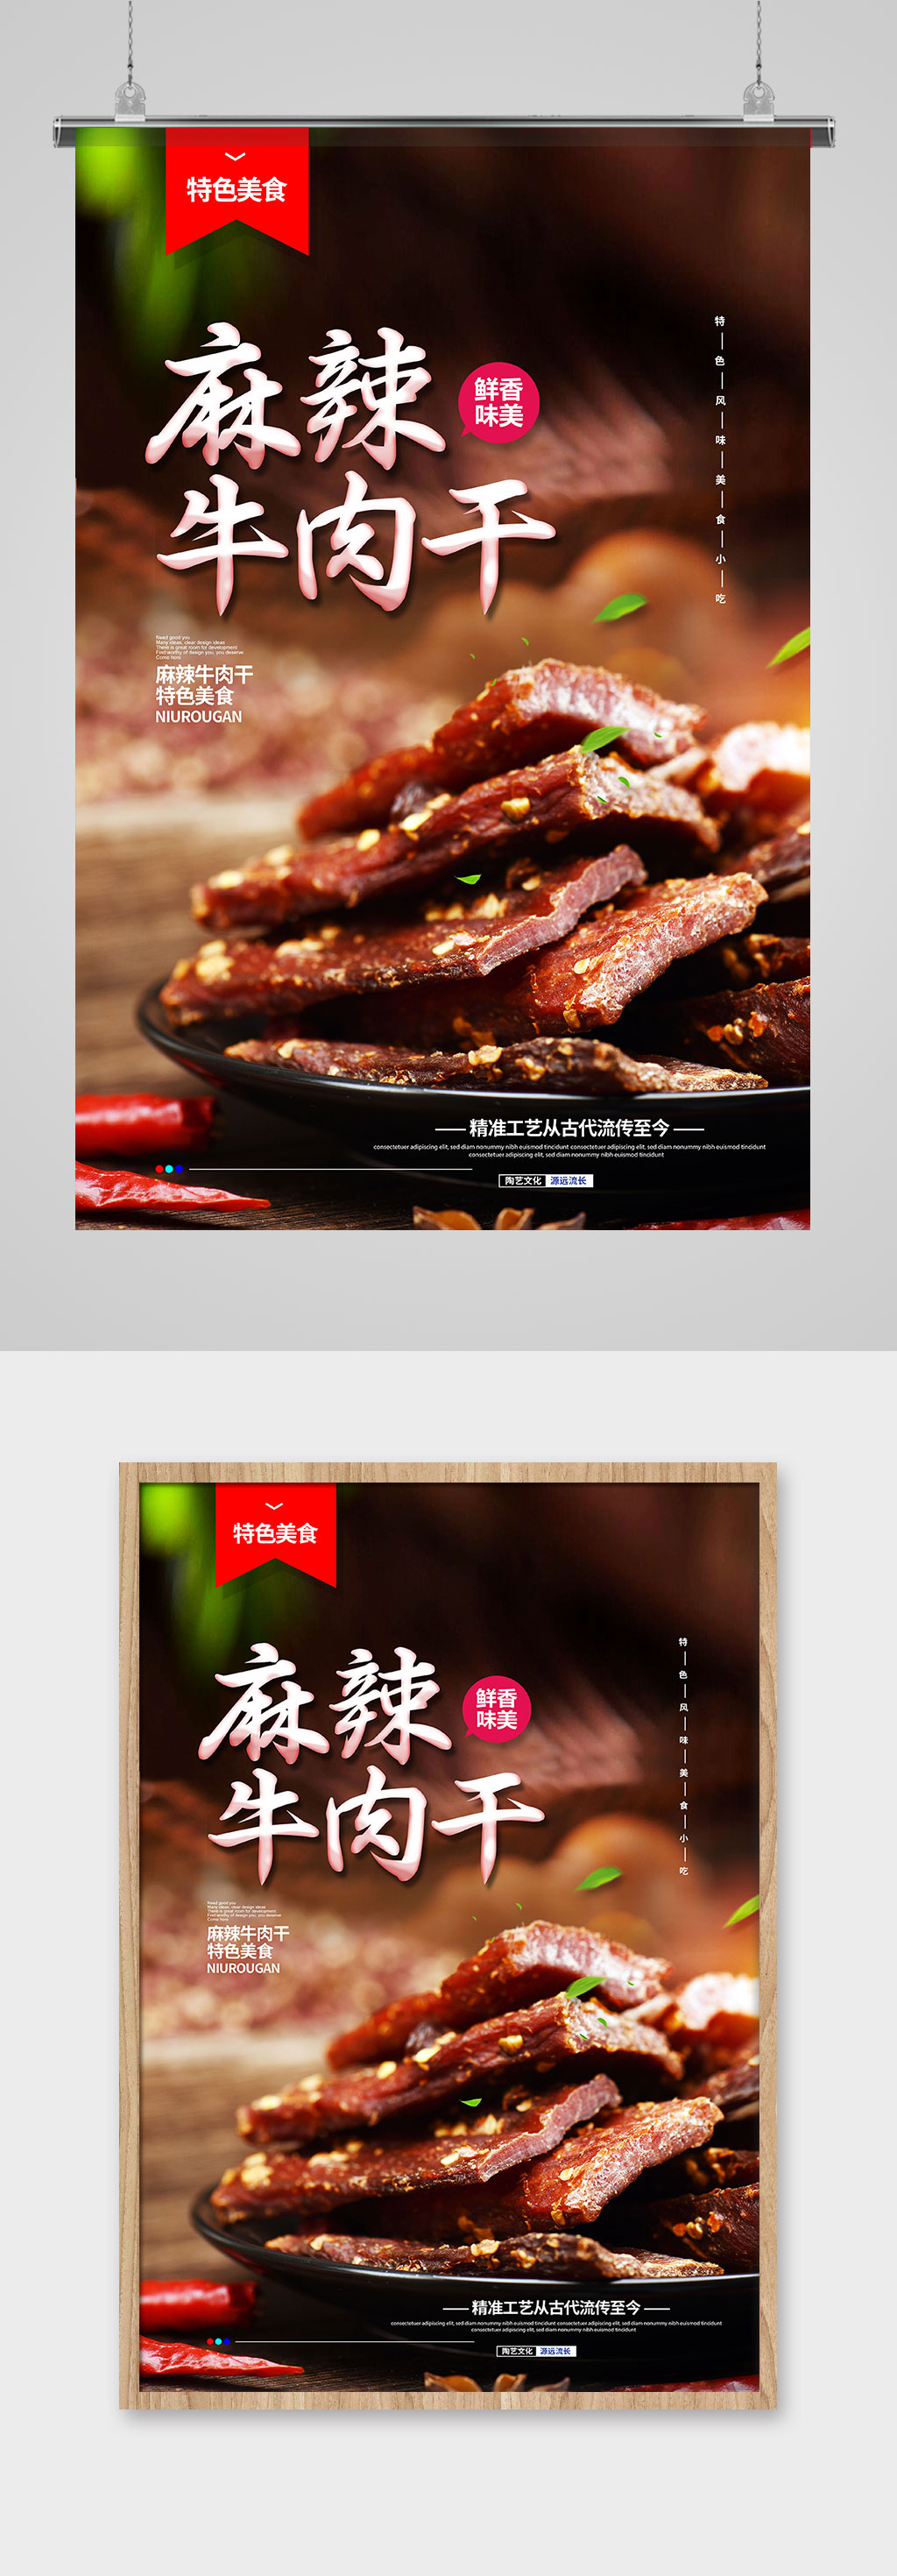 牛肉干广告宣传语图片